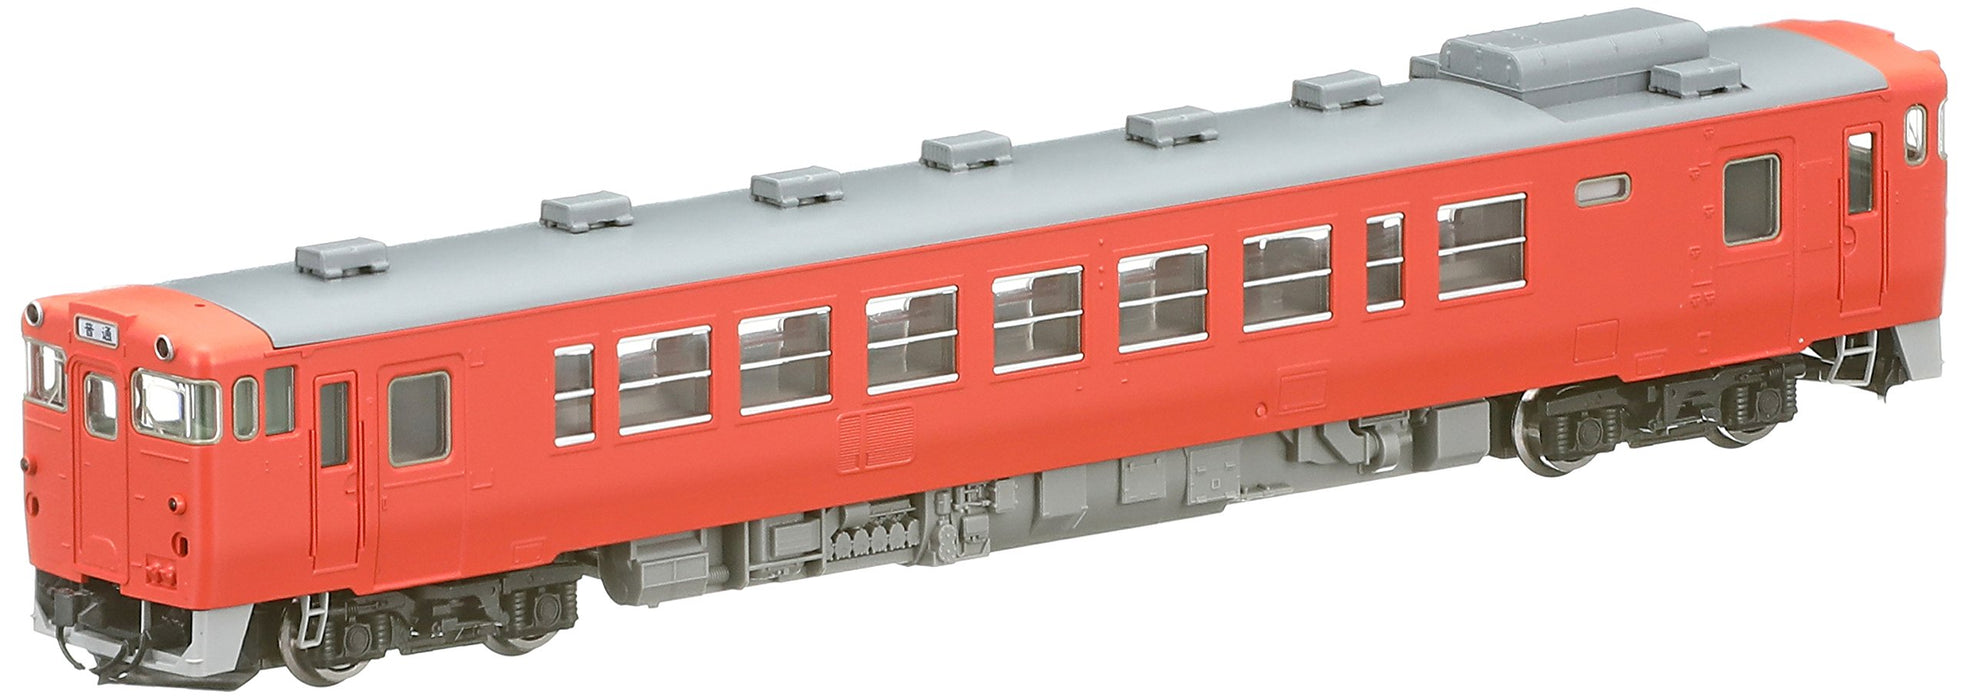 Tomytec Tomix Kiha 40-500 M 8403 Diesel Car: N Gauge Railway Model